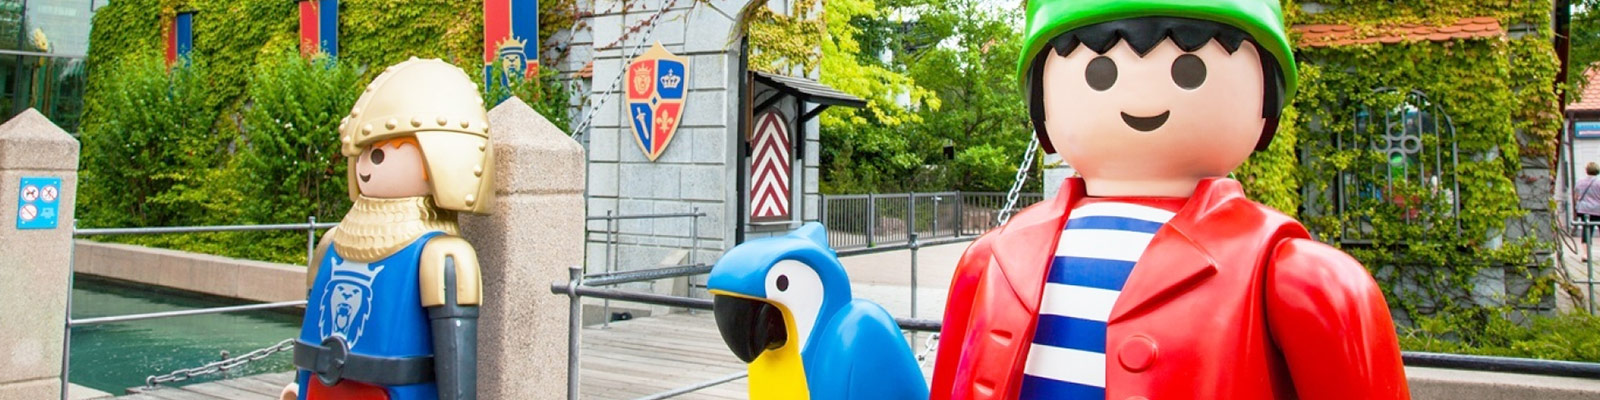 fusión Anormal noche Playmobil Fun Park Alemania - Viajes El Corte Inglés